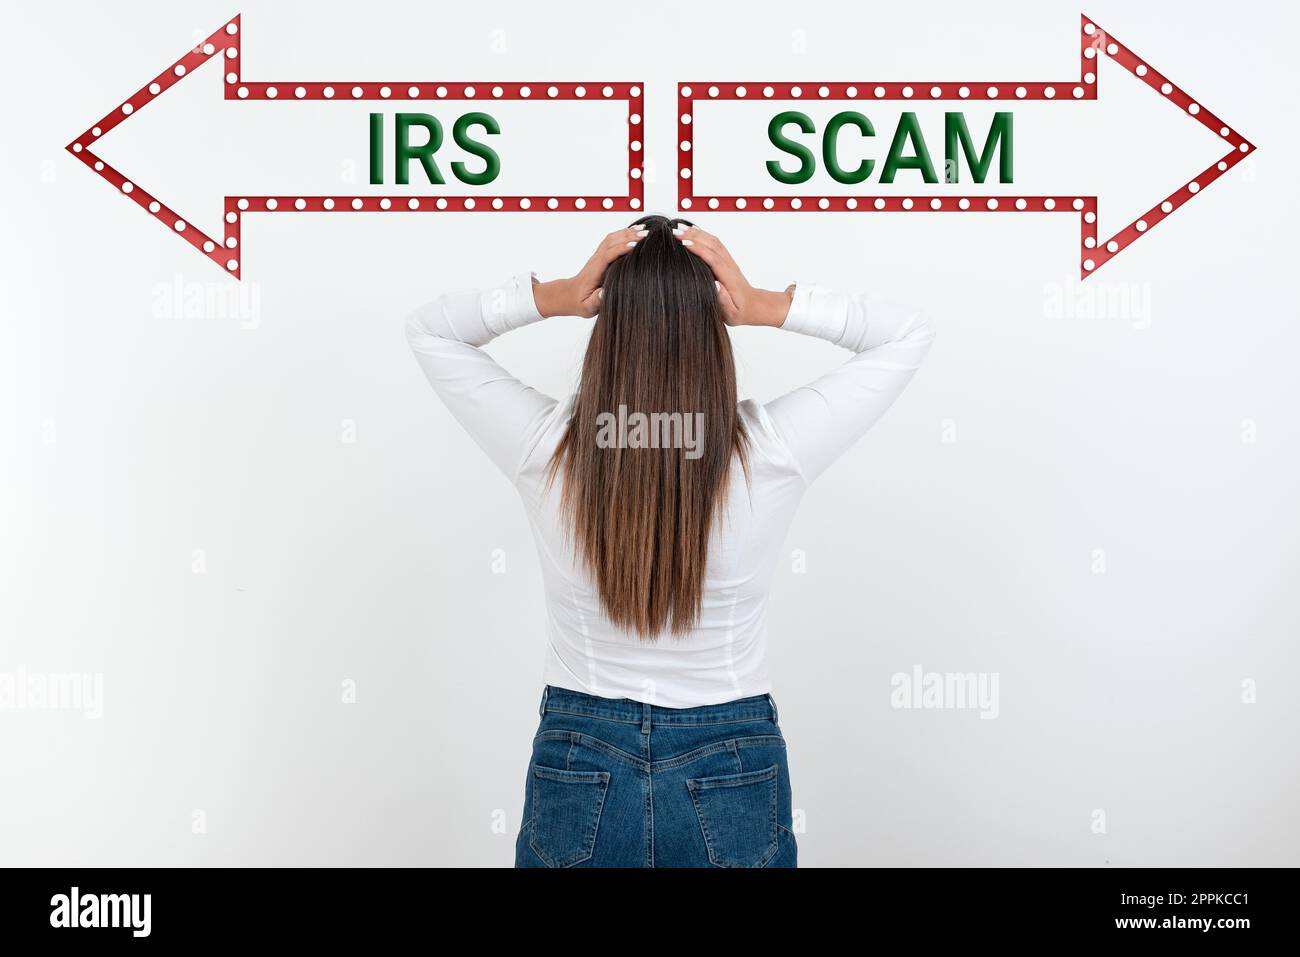 Textunterschrift mit IRS-Betrug. Konzept, das bedeutet, dass es Steuerzahler ins Visier nahm, indem er vorgab, die Steuerbehörde zu sein Stockfoto